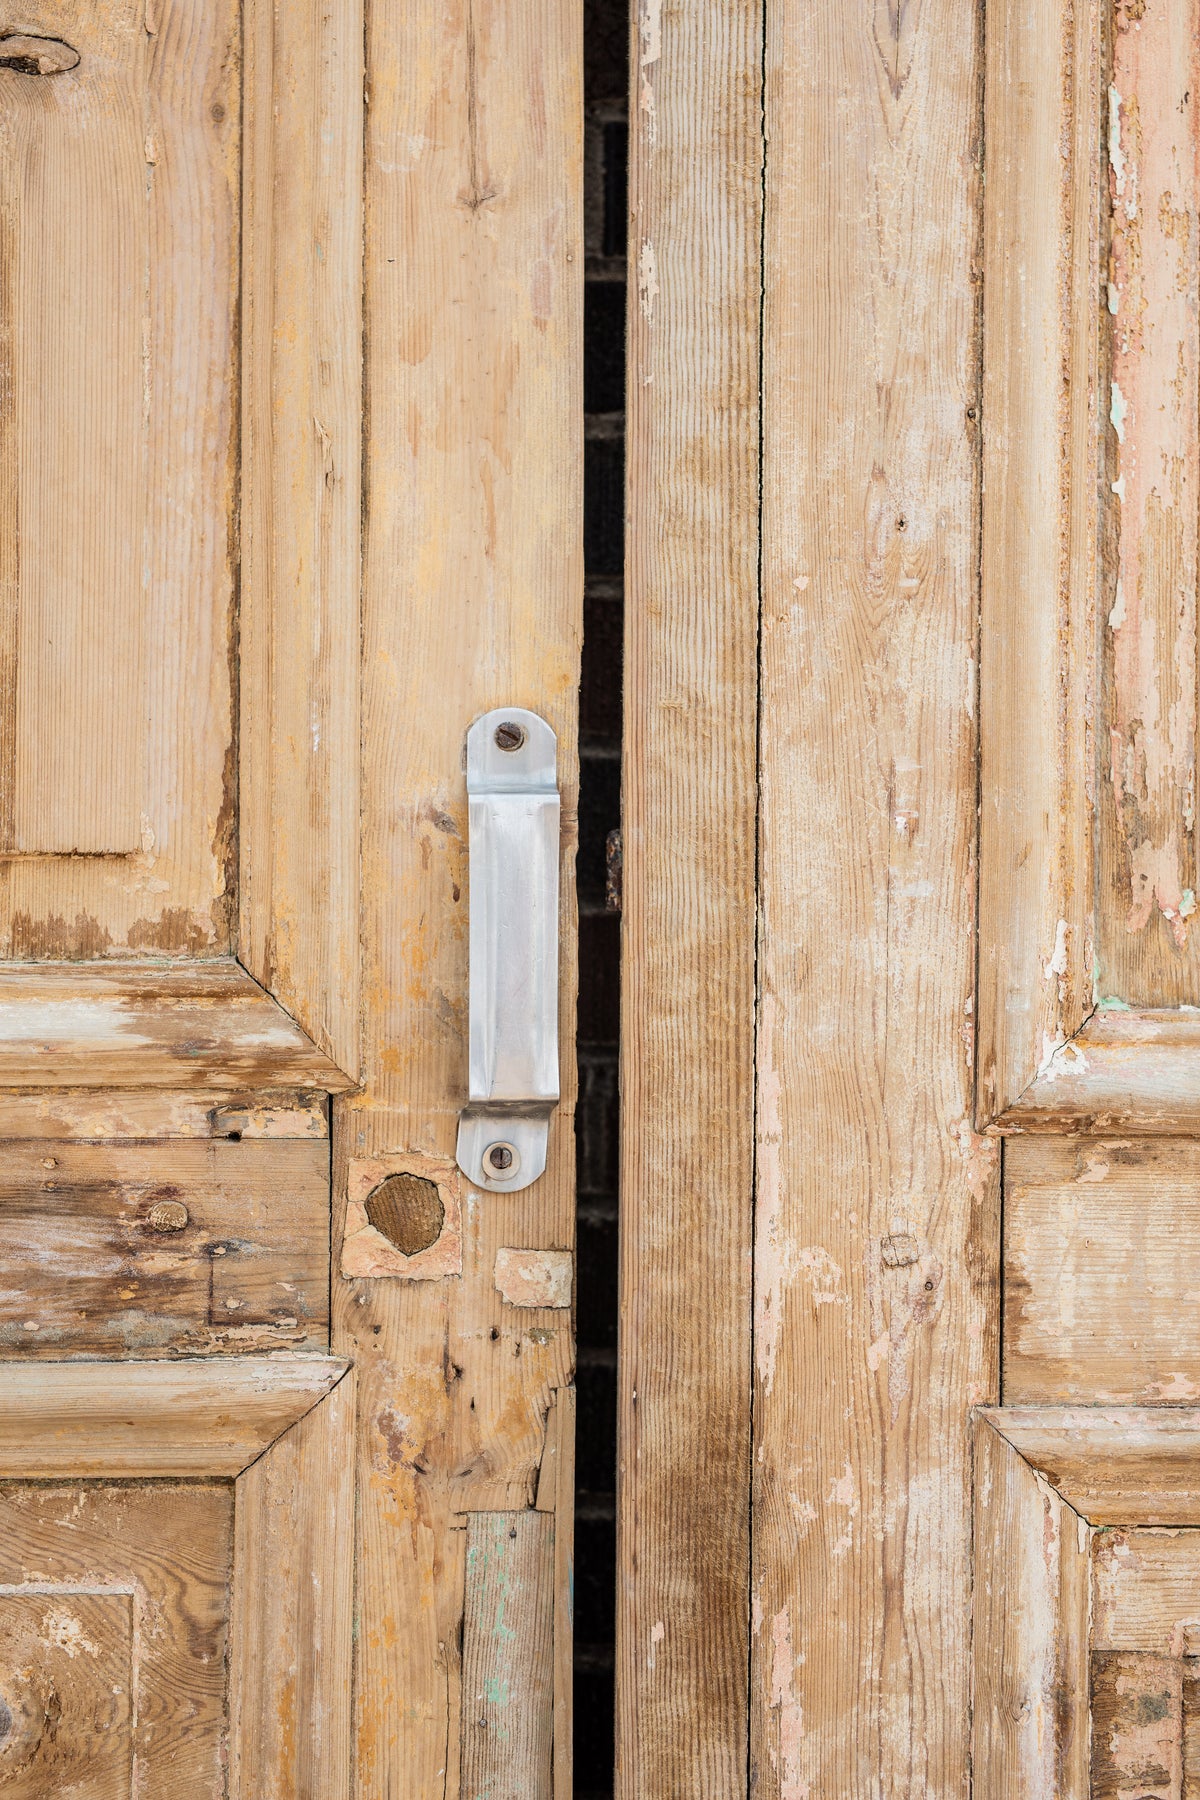 Jolie - Primitive Wooden Doors